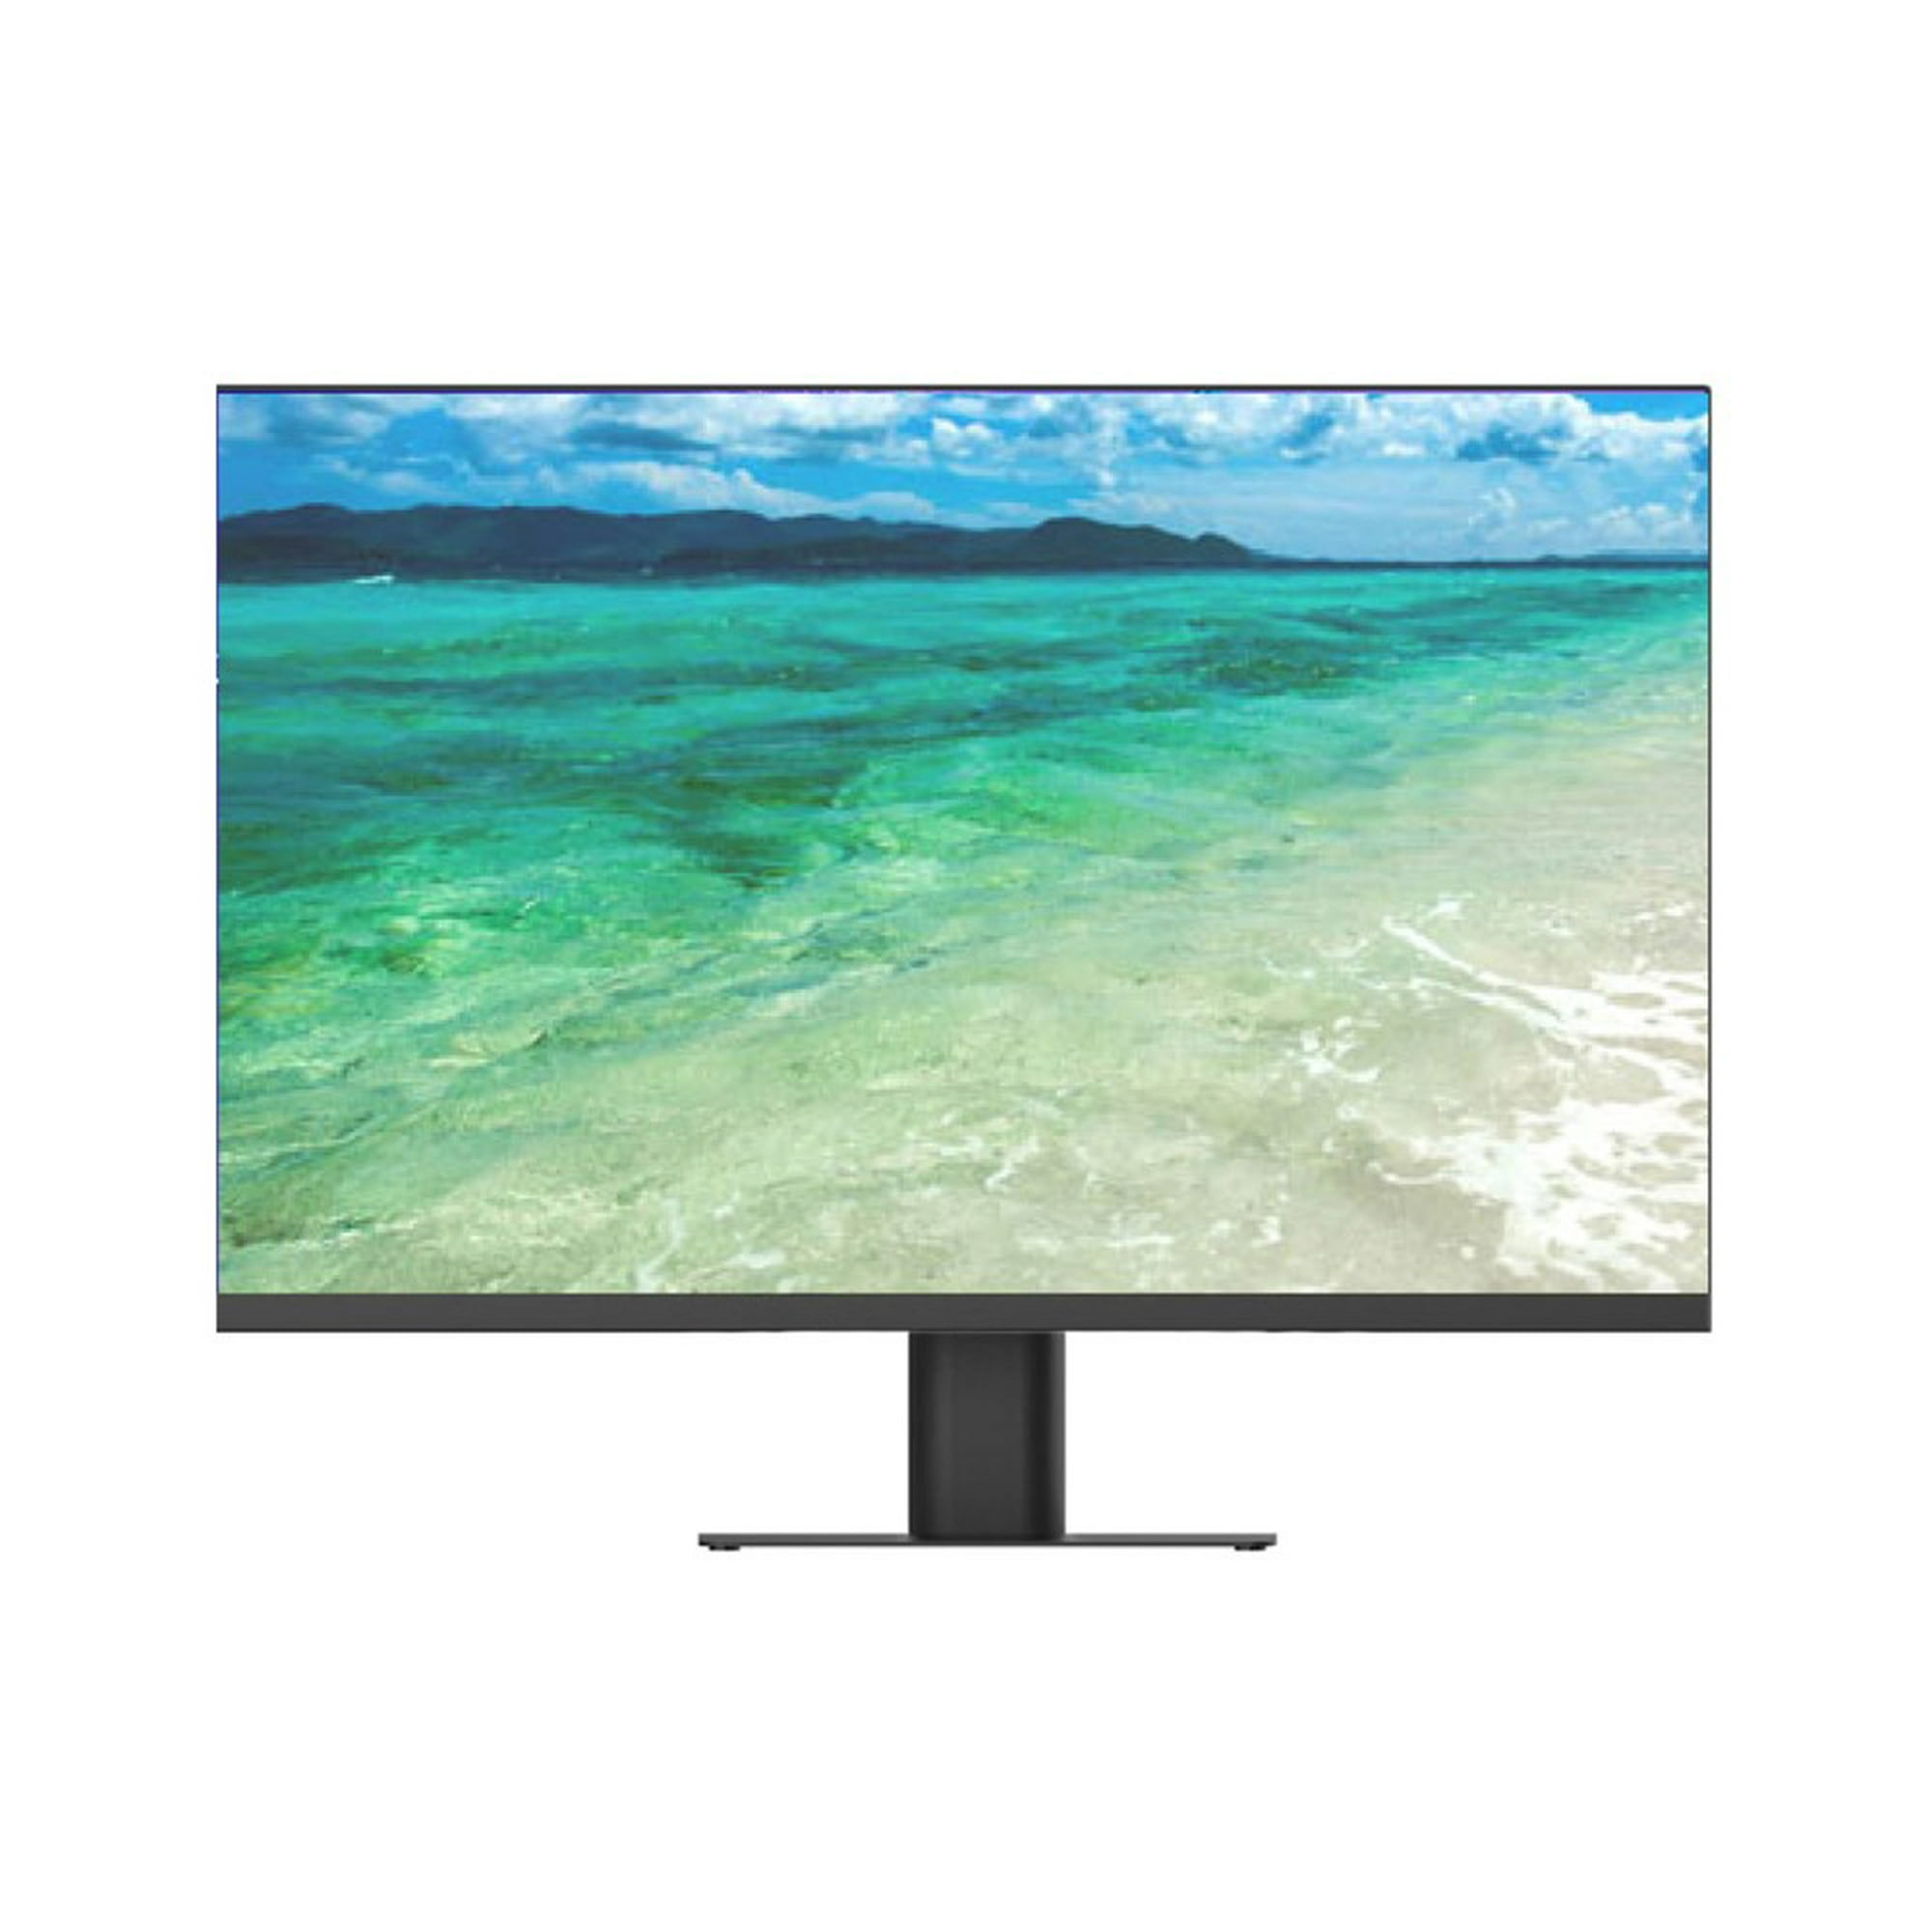 Monitor HP WIDE- 19- LCD- 1000:1- Negro- Reacondicionado.